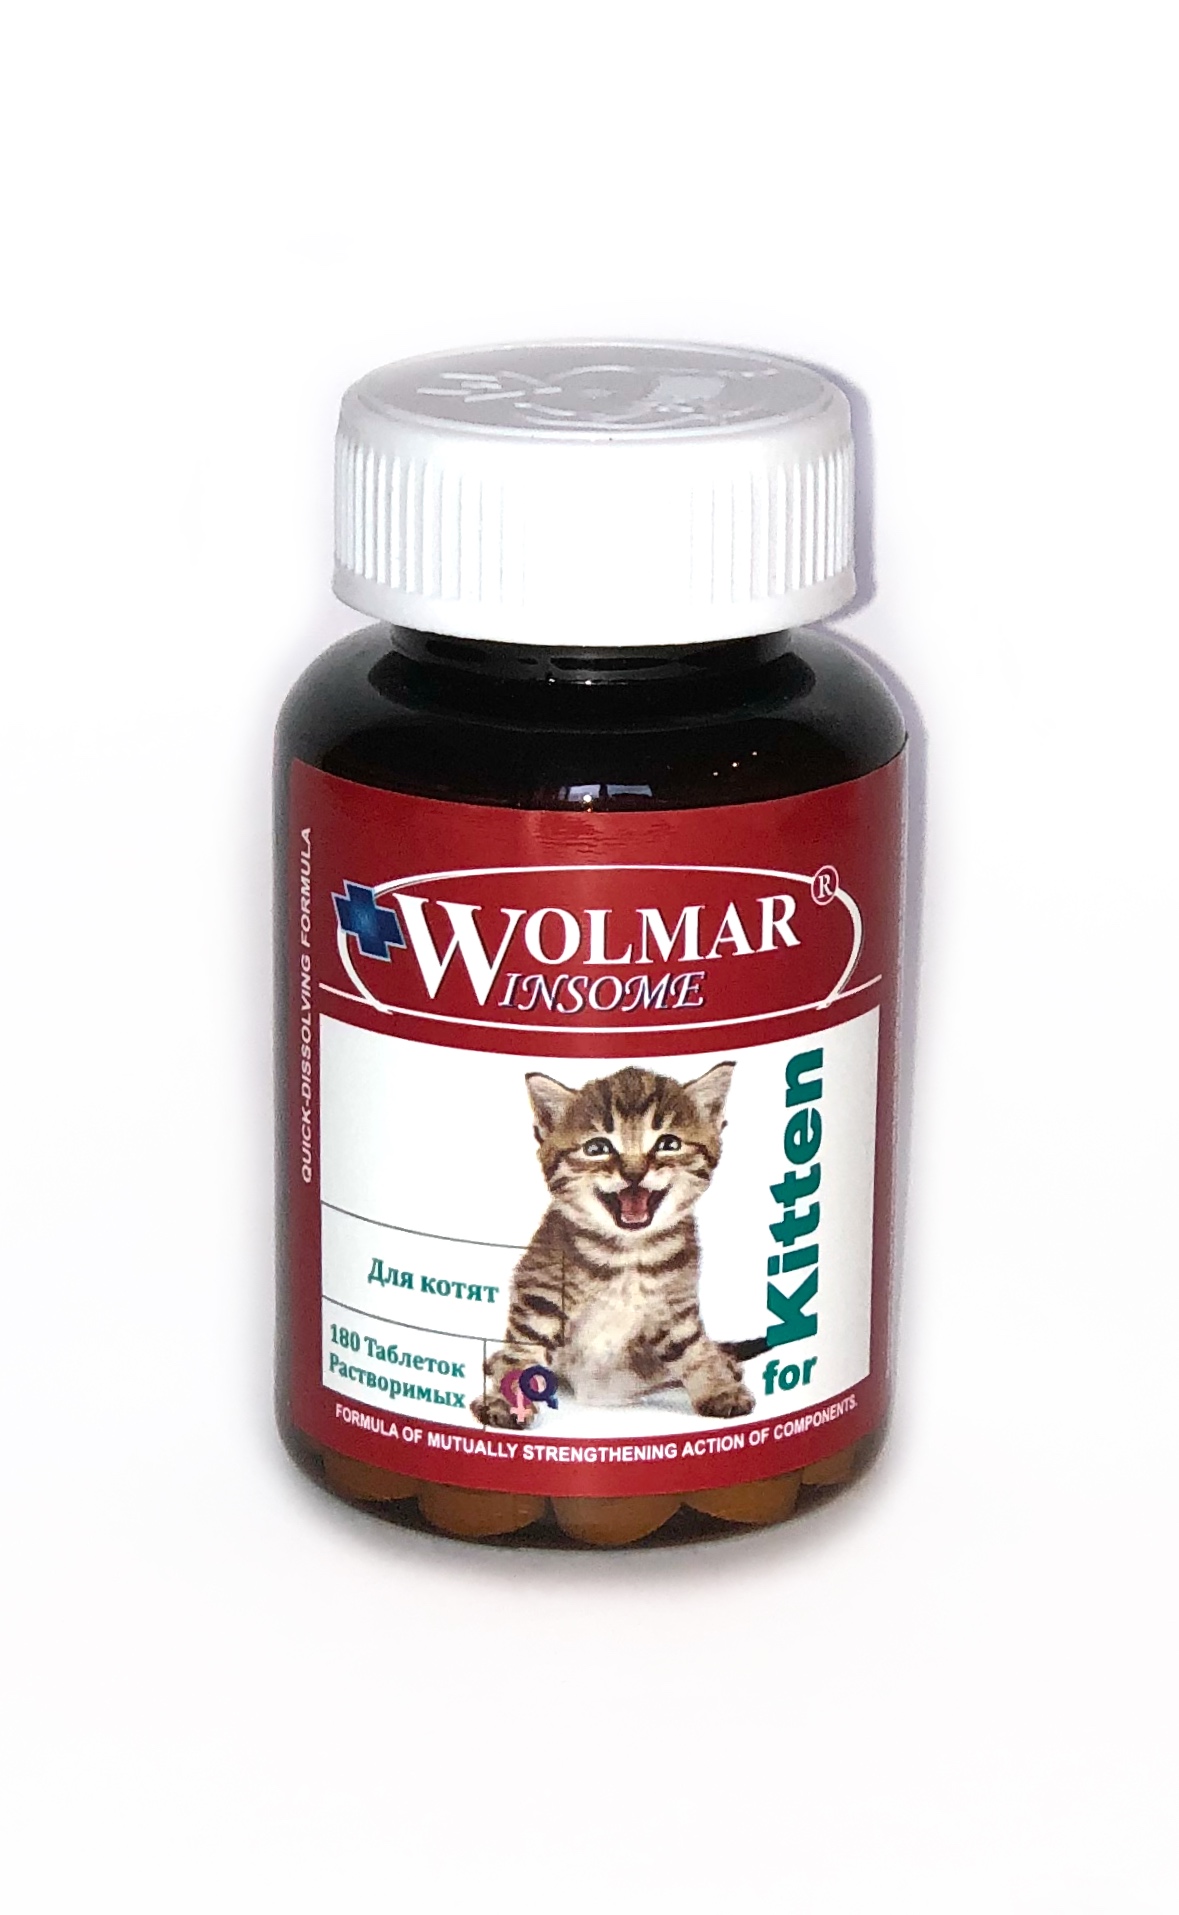 Для котят старше 1,5 месяцев WOLMAR WINSOME for KITTEN – 180 таблеток